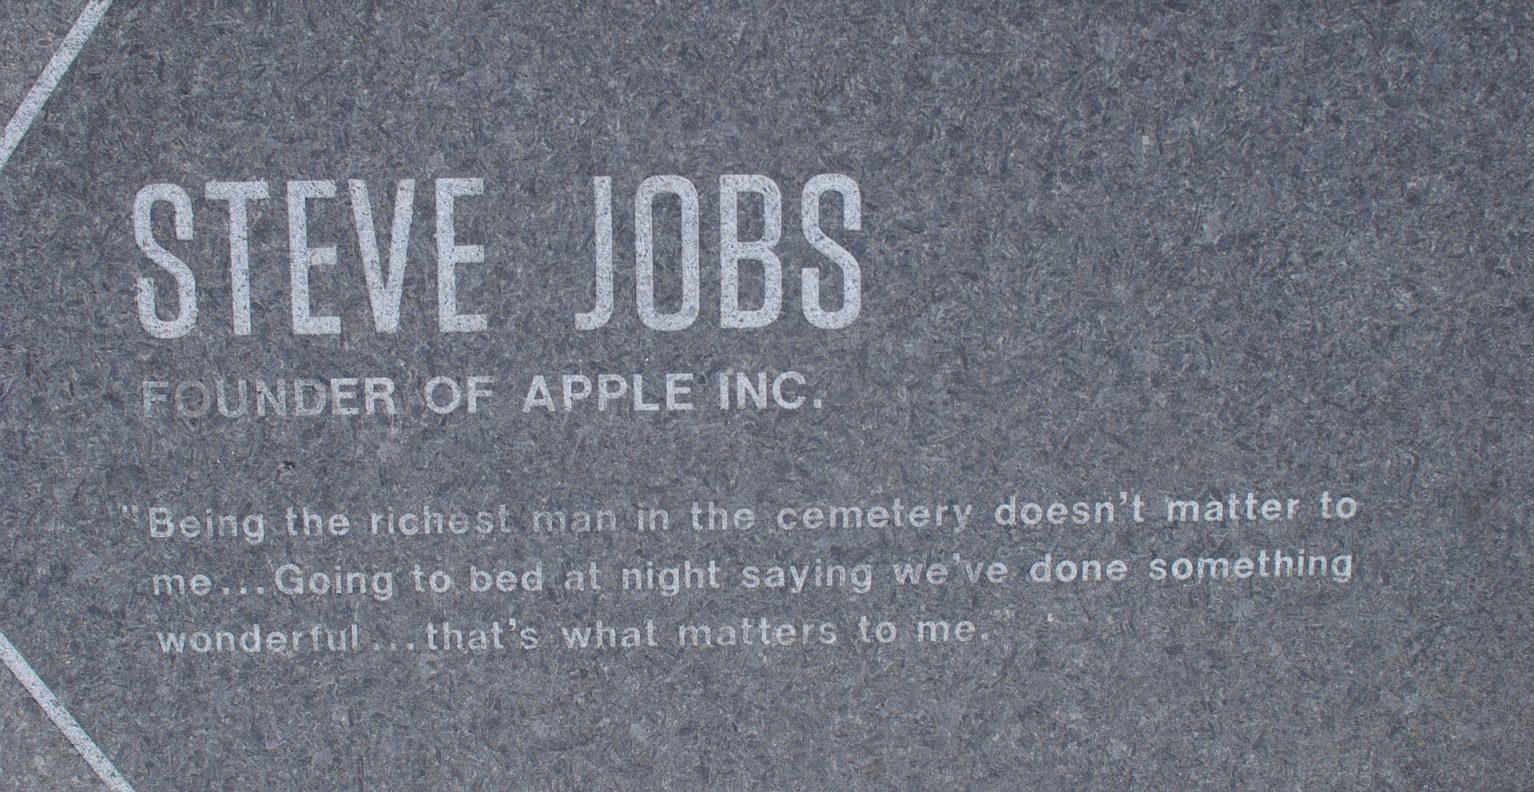 วลีของ Steve Jobs ในมุมมองของหมอ